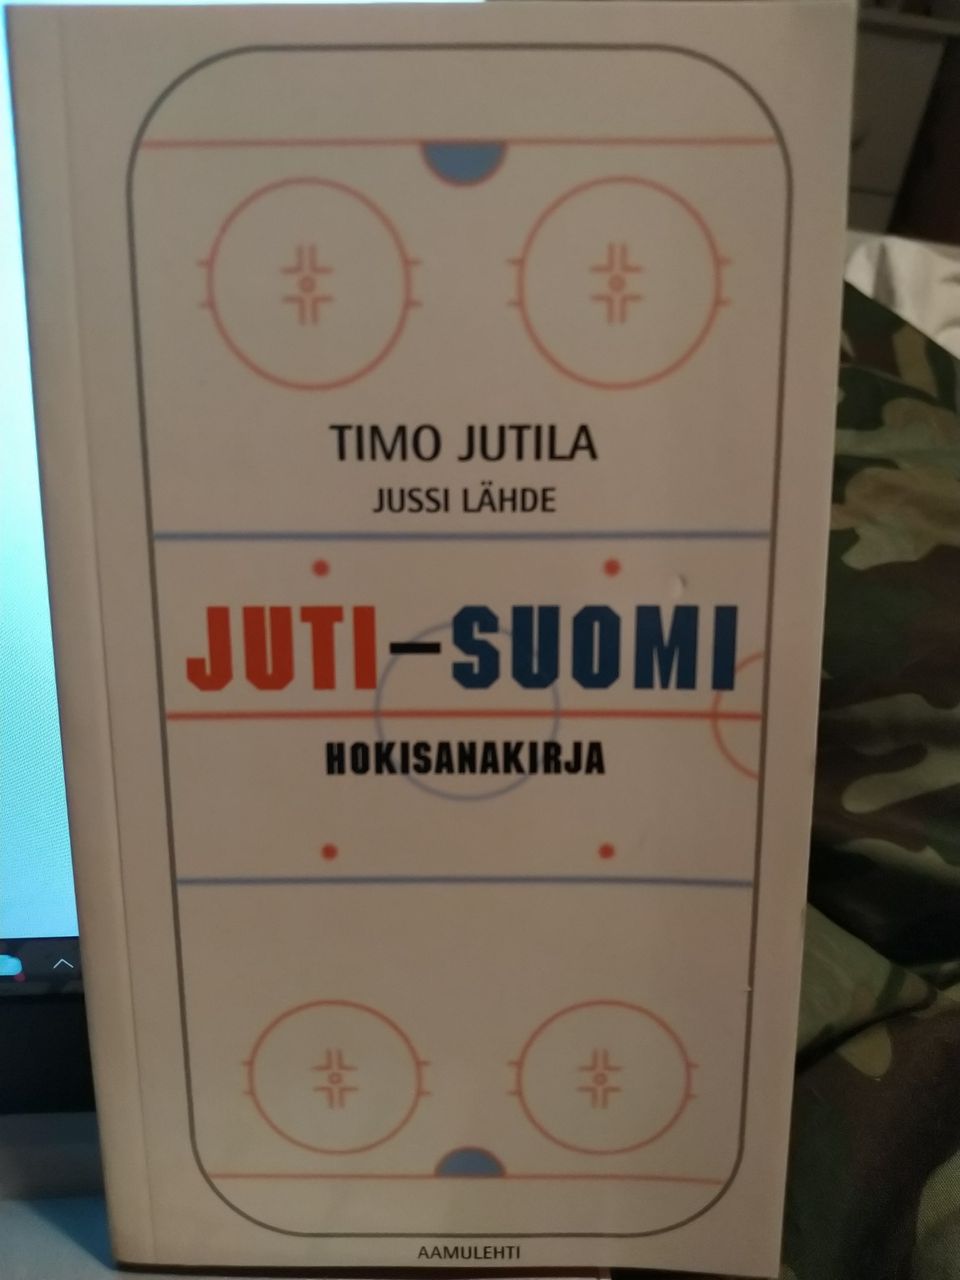 Juti-Suomi hokisanakirja - Timo Jutila & Jussi Lähde